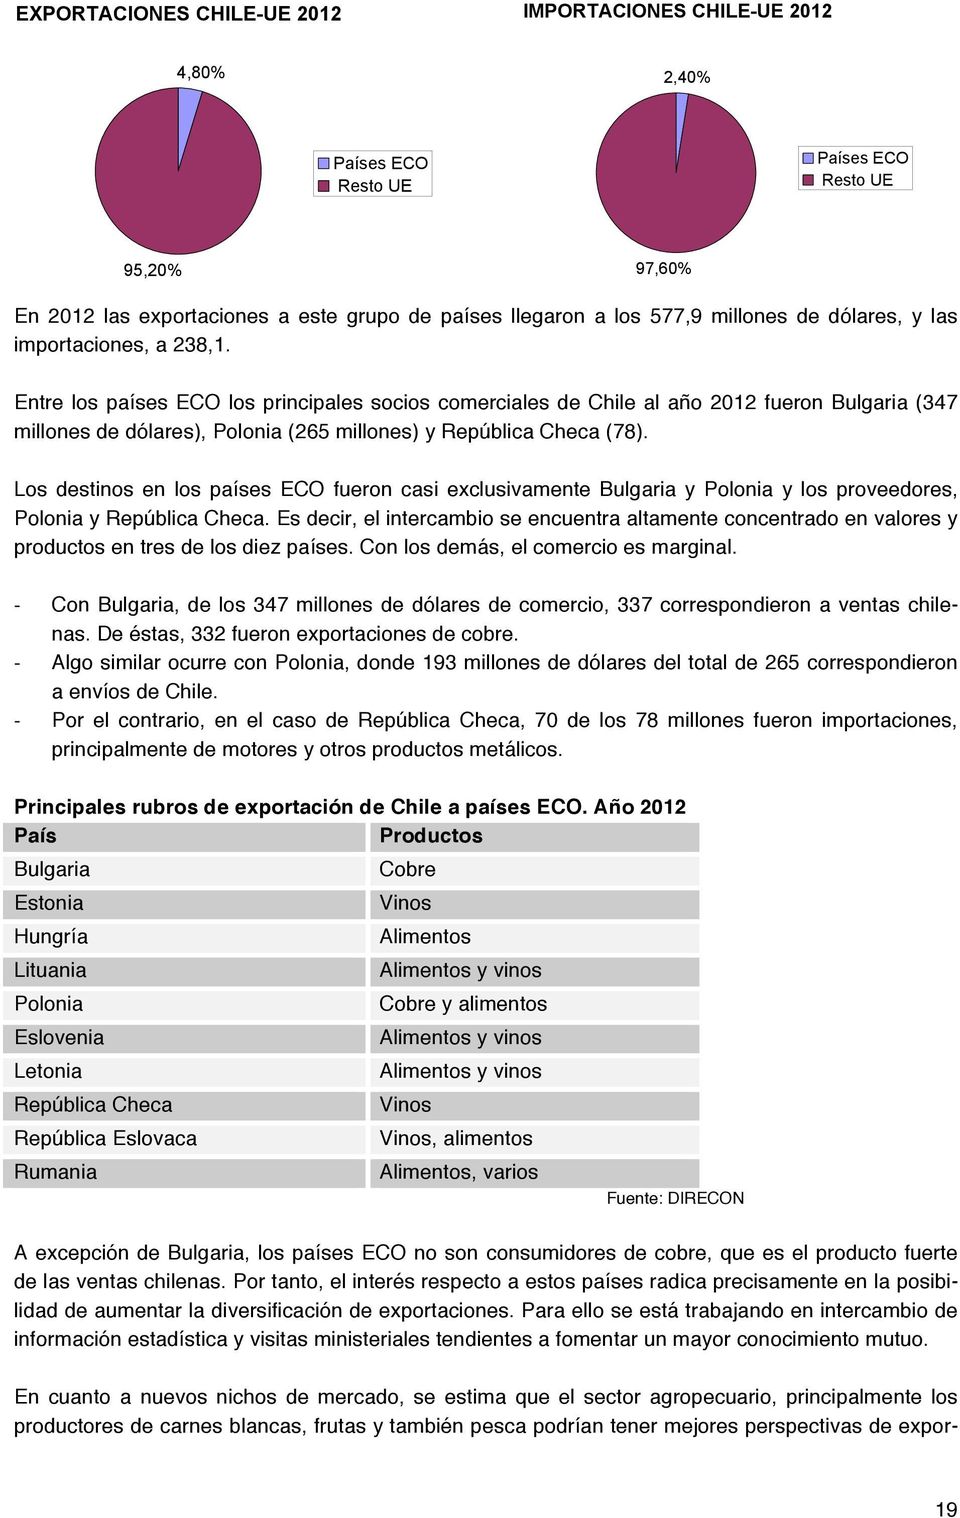 Entre los países ECO los principales socios comerciales de Chile al año 2012 fueron Bulgaria (347 millones de dólares), Polonia (265 millones) y República Checa (78).